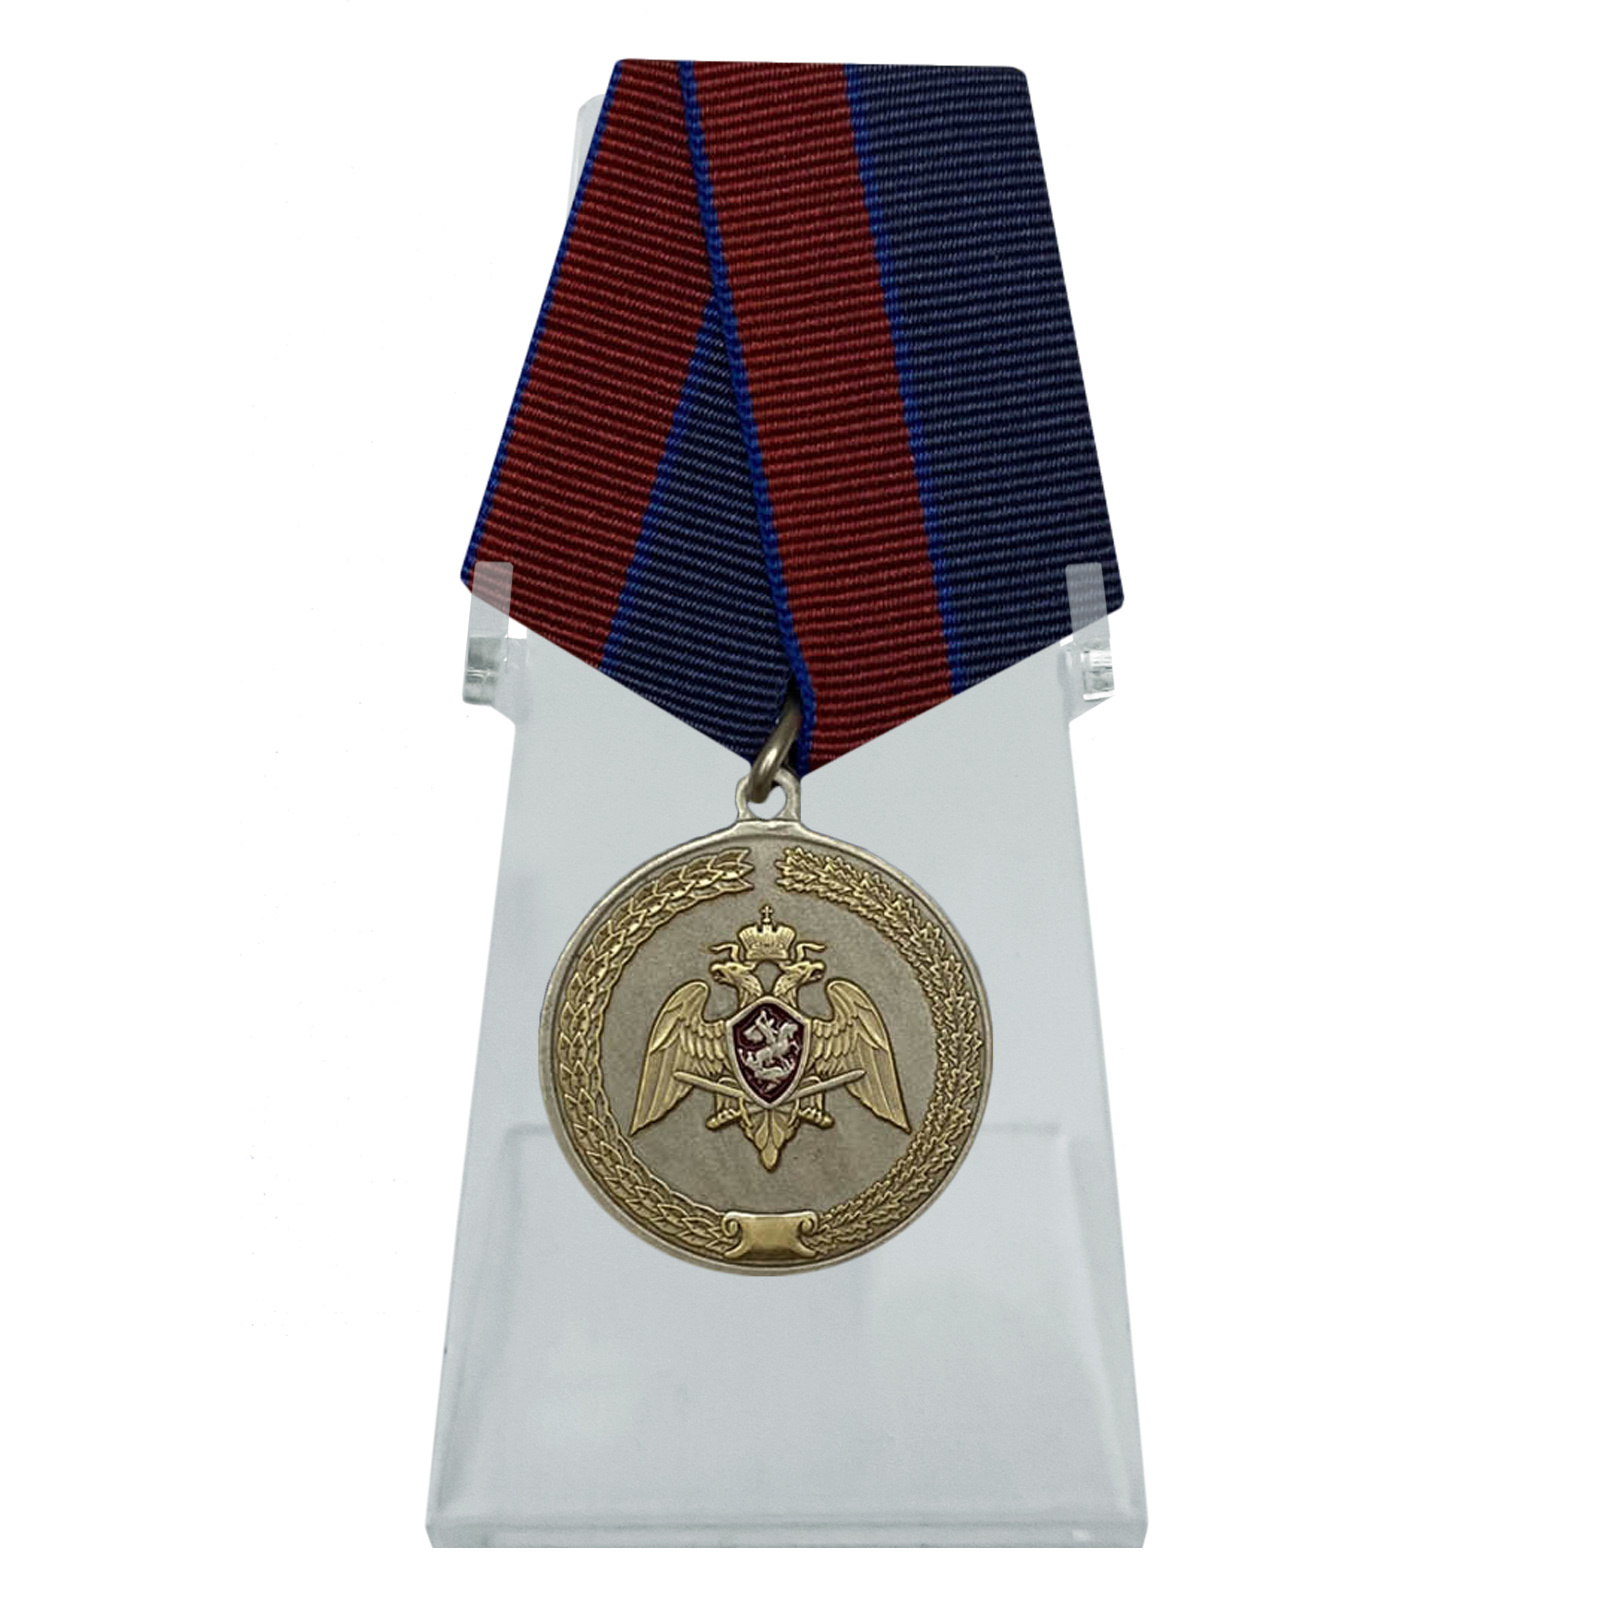 Купить медаль За заслуги в укреплении правопорядка (Росгвардии) на подставке в подарок